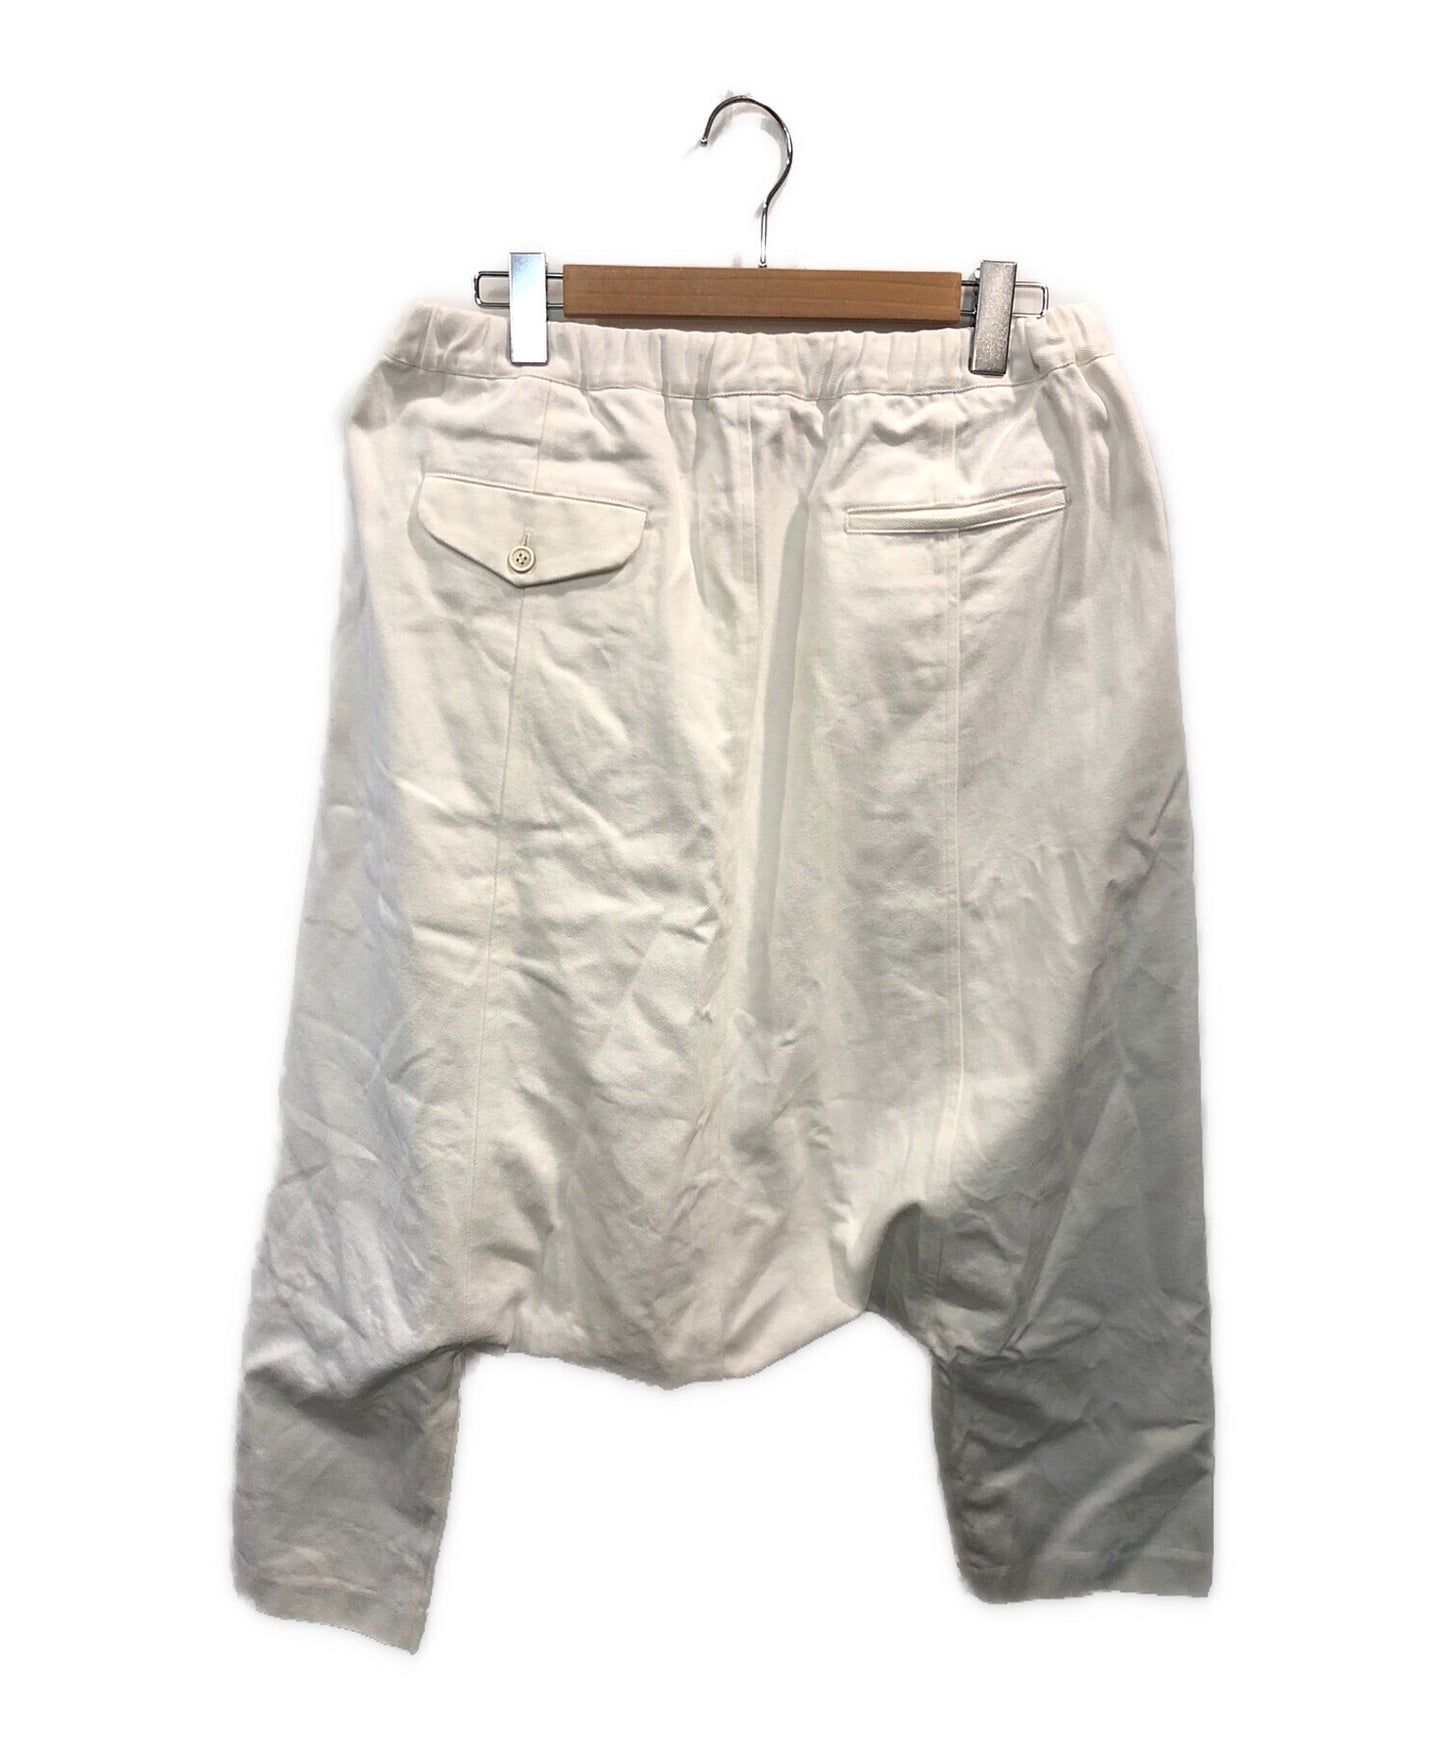 Black Comme des Garcons Cotton Sarouel Pants 1L-P018